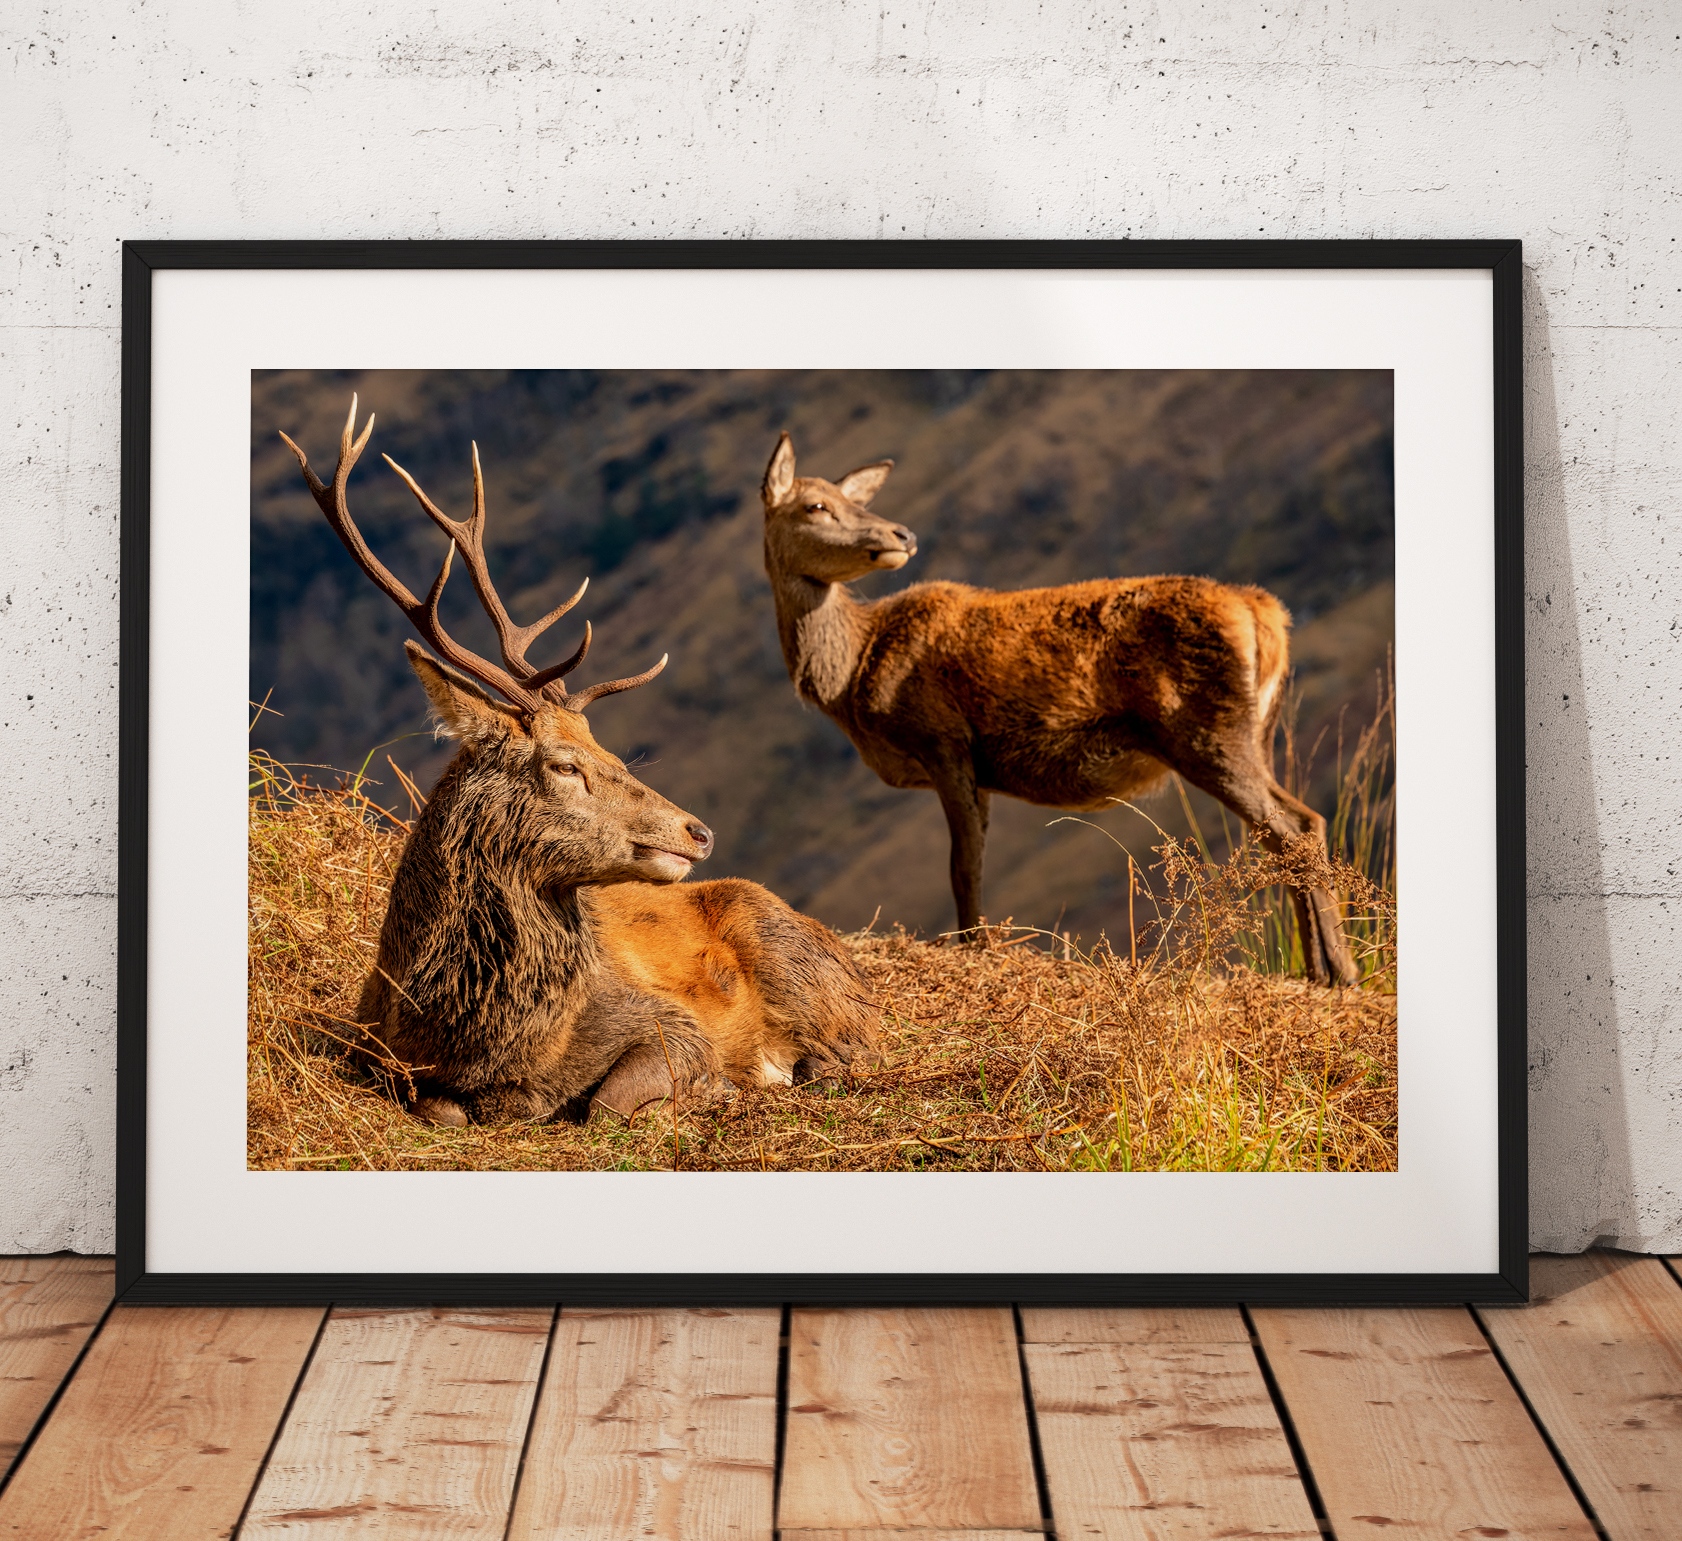 Northern Wild Landscape Photography - Stag Deer and Doe Glen Etive, Scottish Highlands, Wildlife Scotland